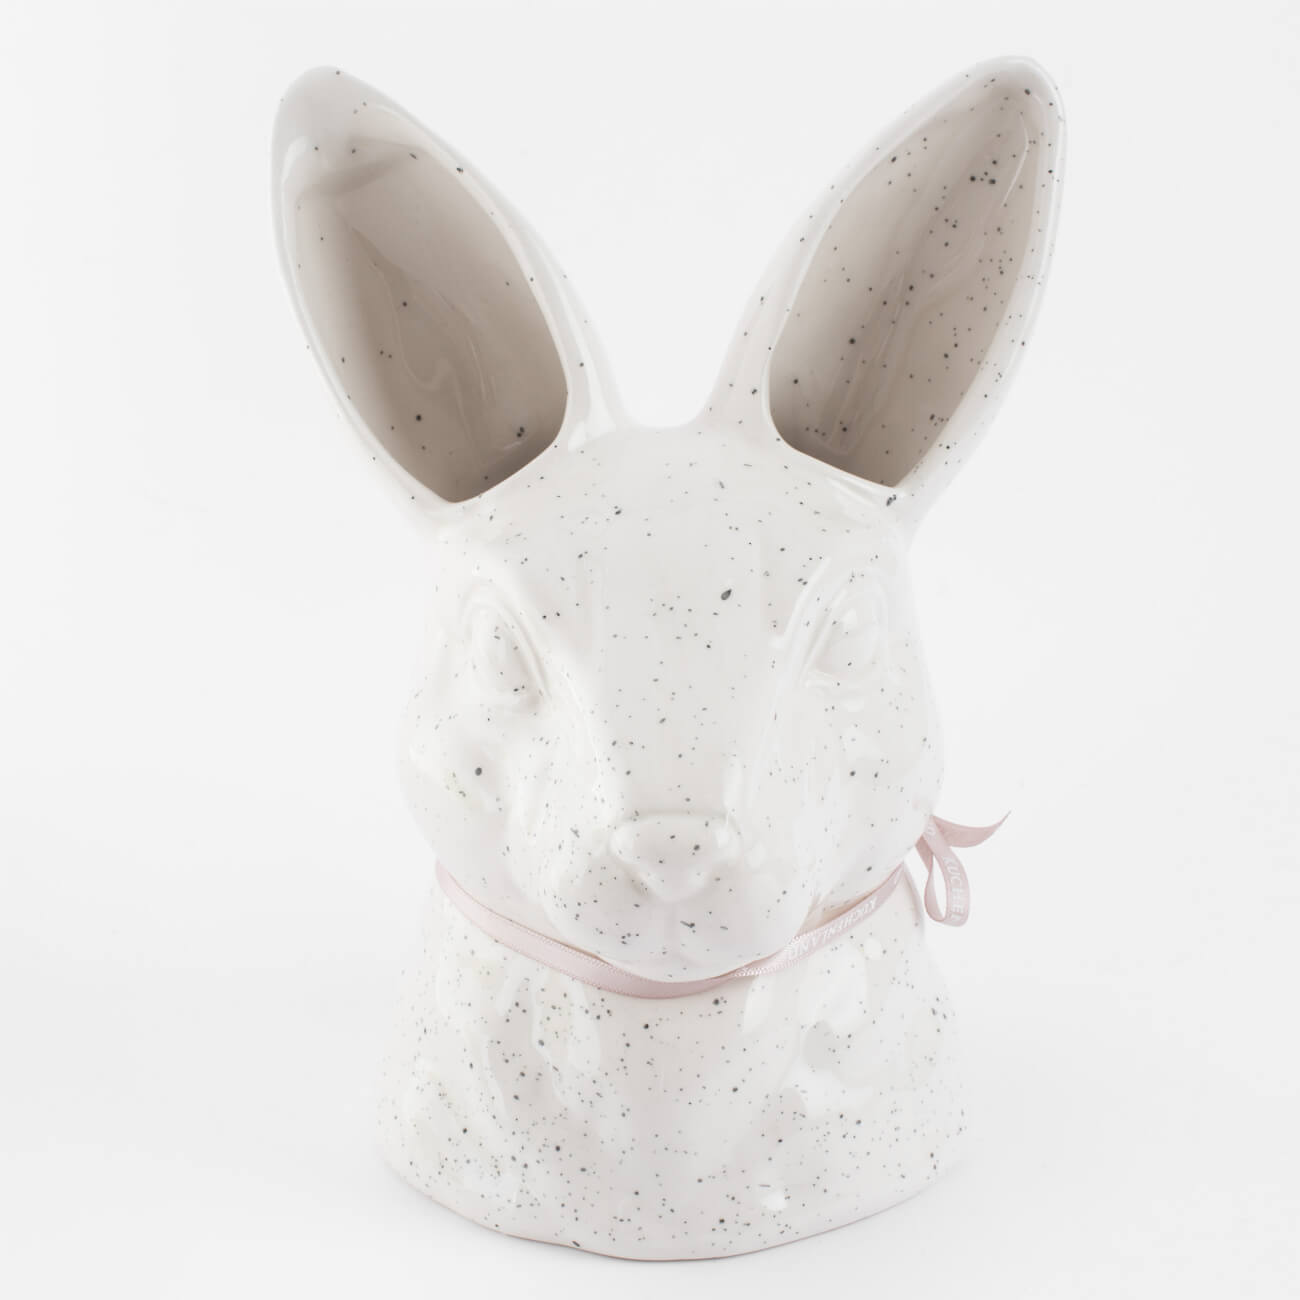 Ваза для цветов, 20 см, декоративная, керамика, молочная, в крапинку, Кролик, Natural Easter емкость для хранения 17х14 см 1 5 л с ручкой керамика молочная перламутр кролик easter